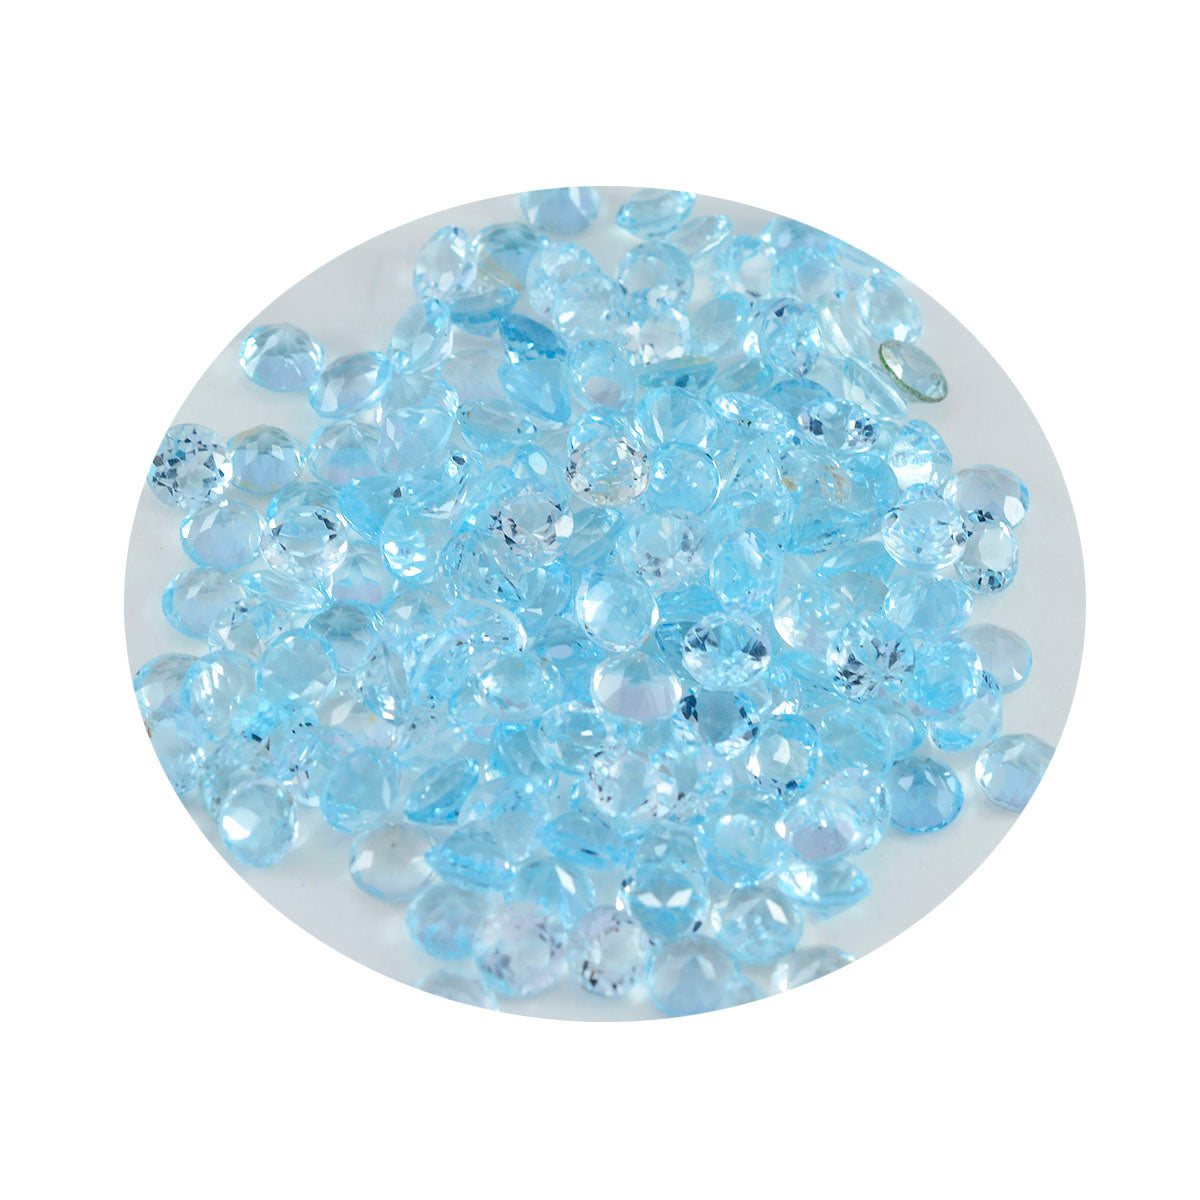 riyogems 1 шт. настоящий синий топаз ограненный 2x2 мм круглый драгоценный камень потрясающего качества